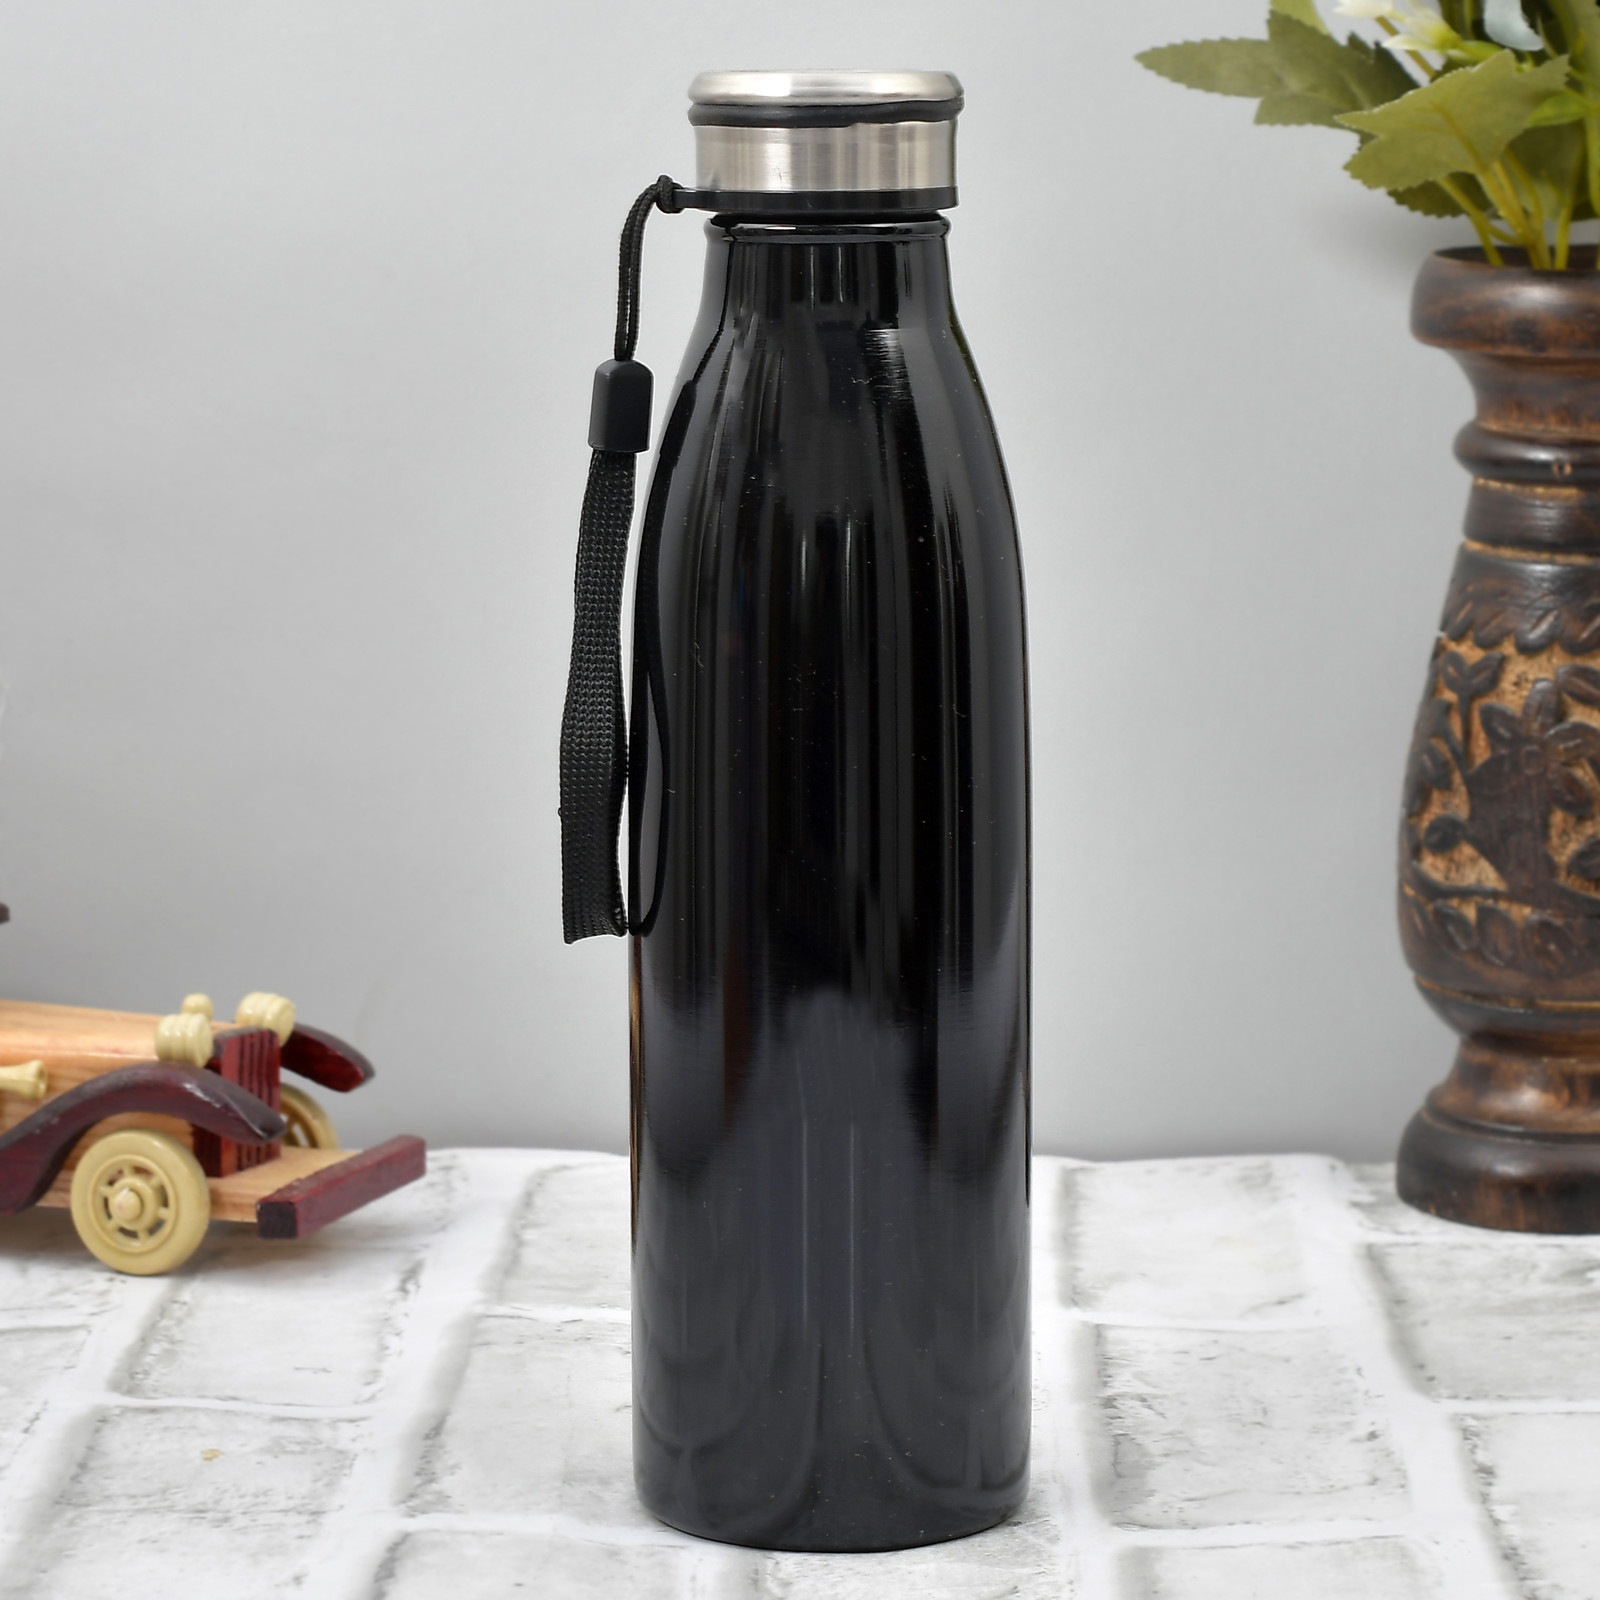 Kuber Industries Stainless Steel Fridge Water Bottle, 750 ML (Black)-HS42KUBMART25193